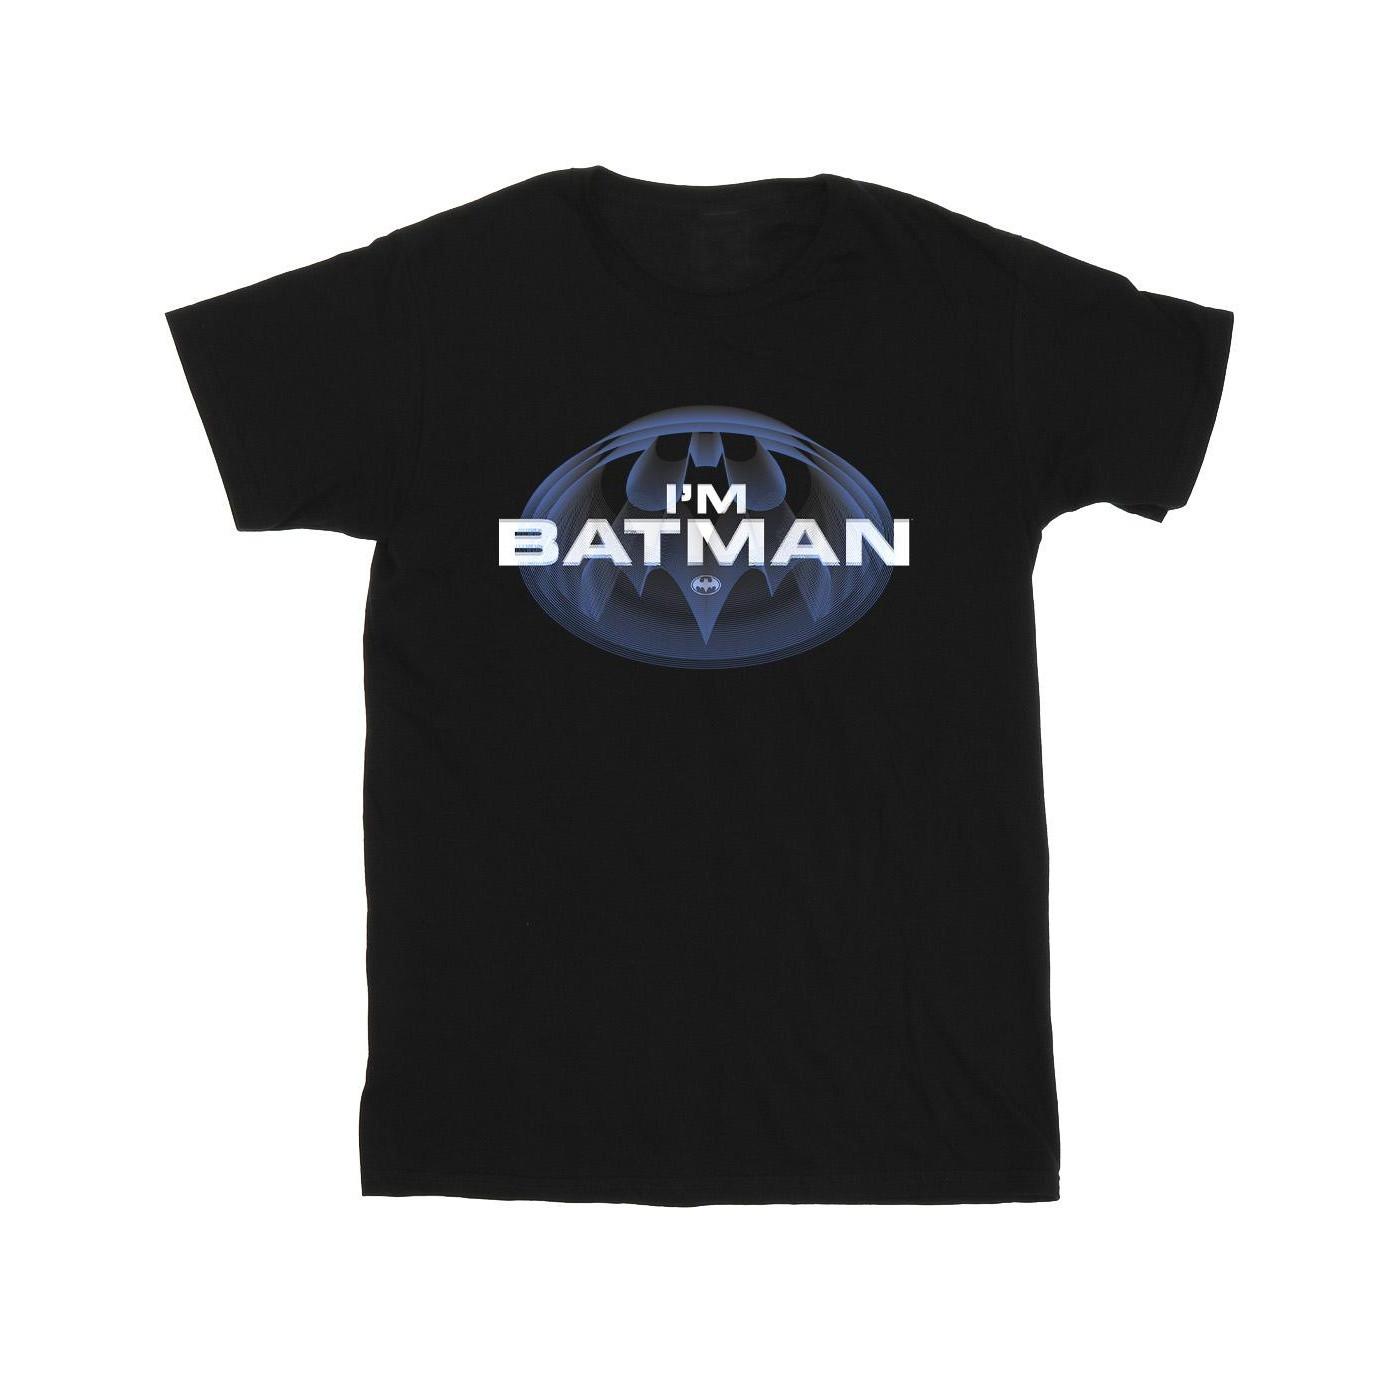 DC COMICS  Tshirt THE FLASH I'M BATMAN 